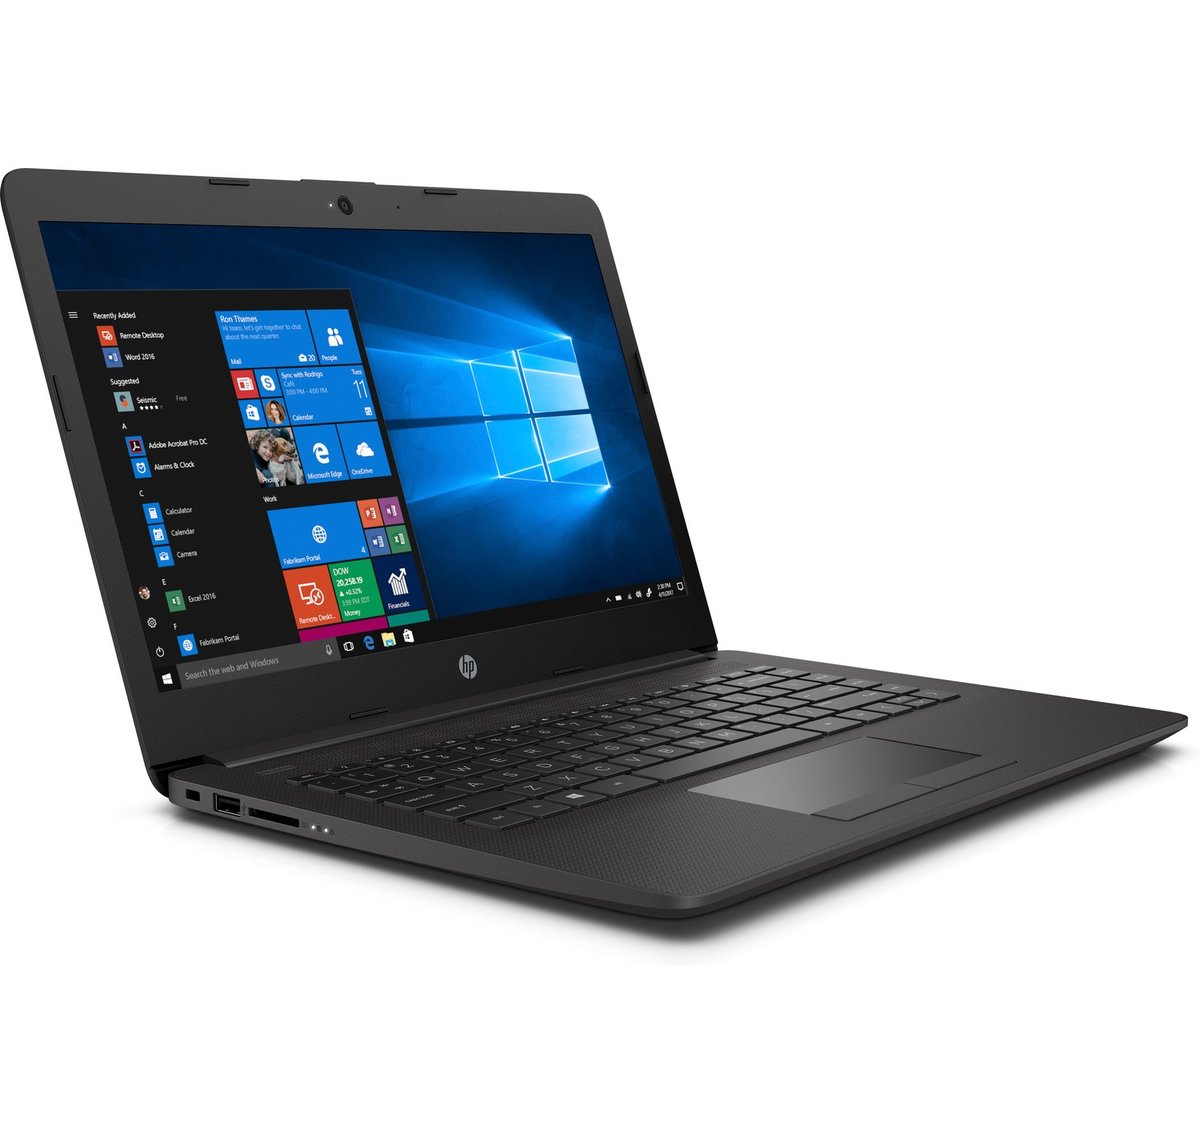 Laptop HP 240 G7 Intel Core i5-1035G1, 4GB RAM DDR4, 1TB SATA (10ª